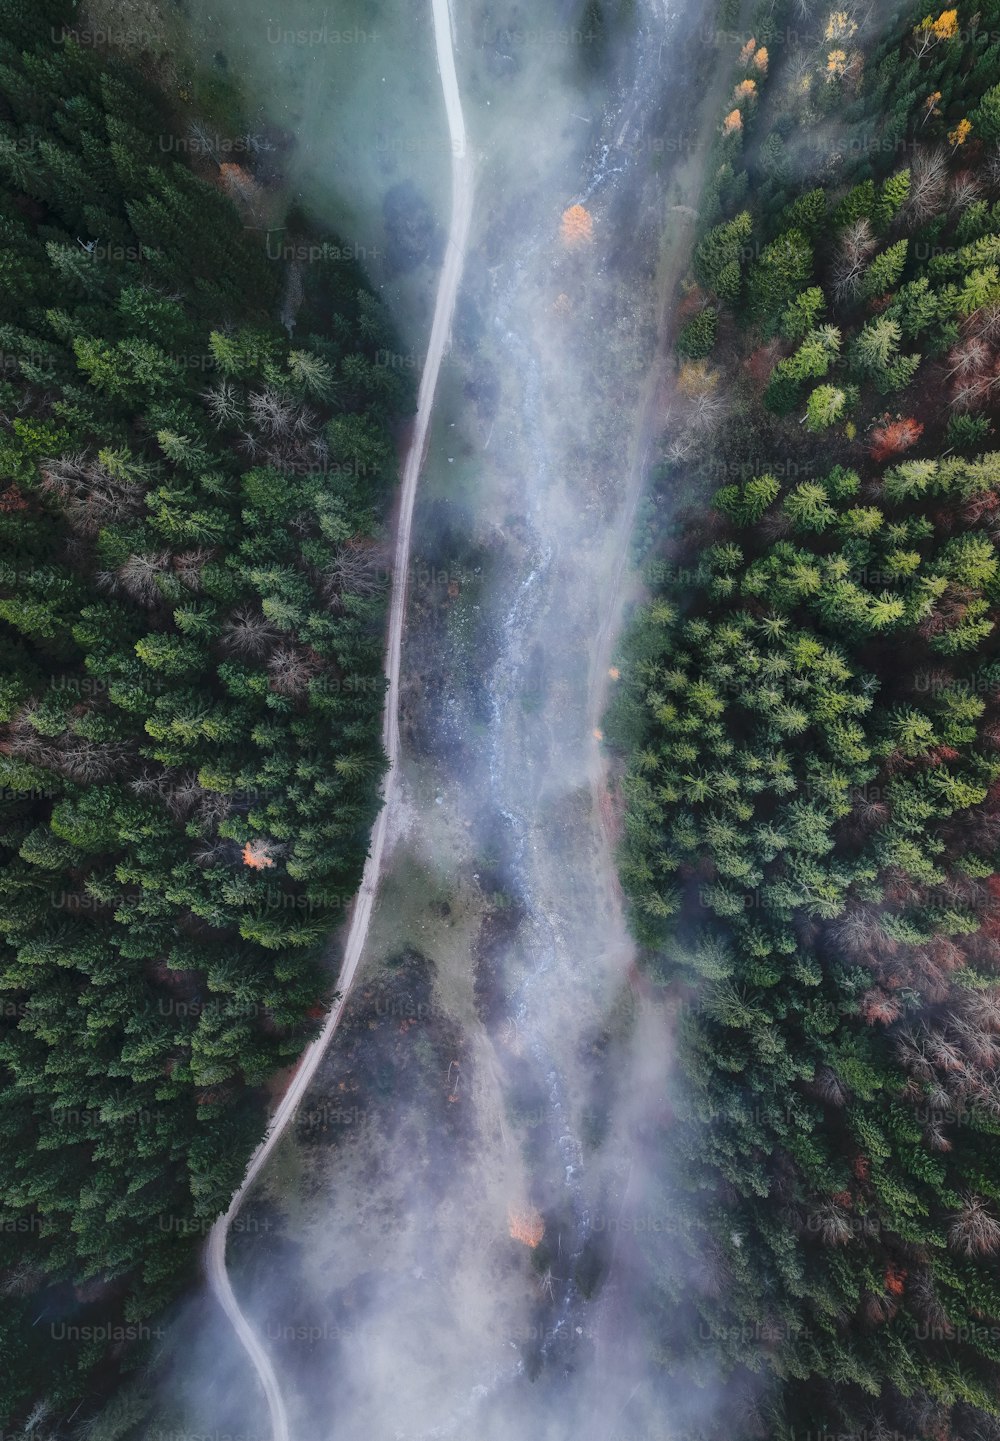 Una veduta aerea di una strada nel mezzo di una foresta